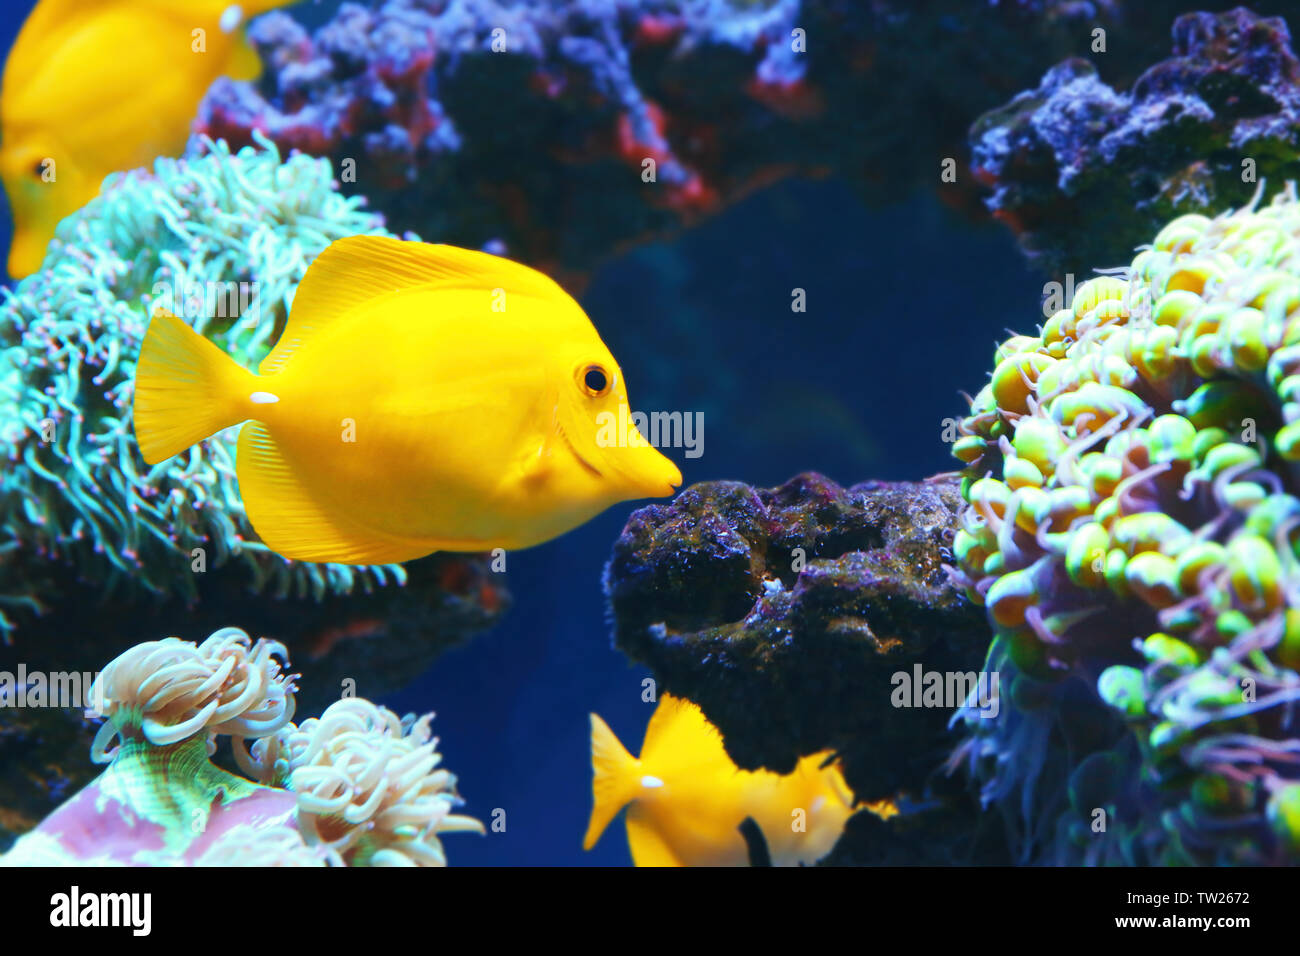 Exotic coral fish in aquarium Stock Photo